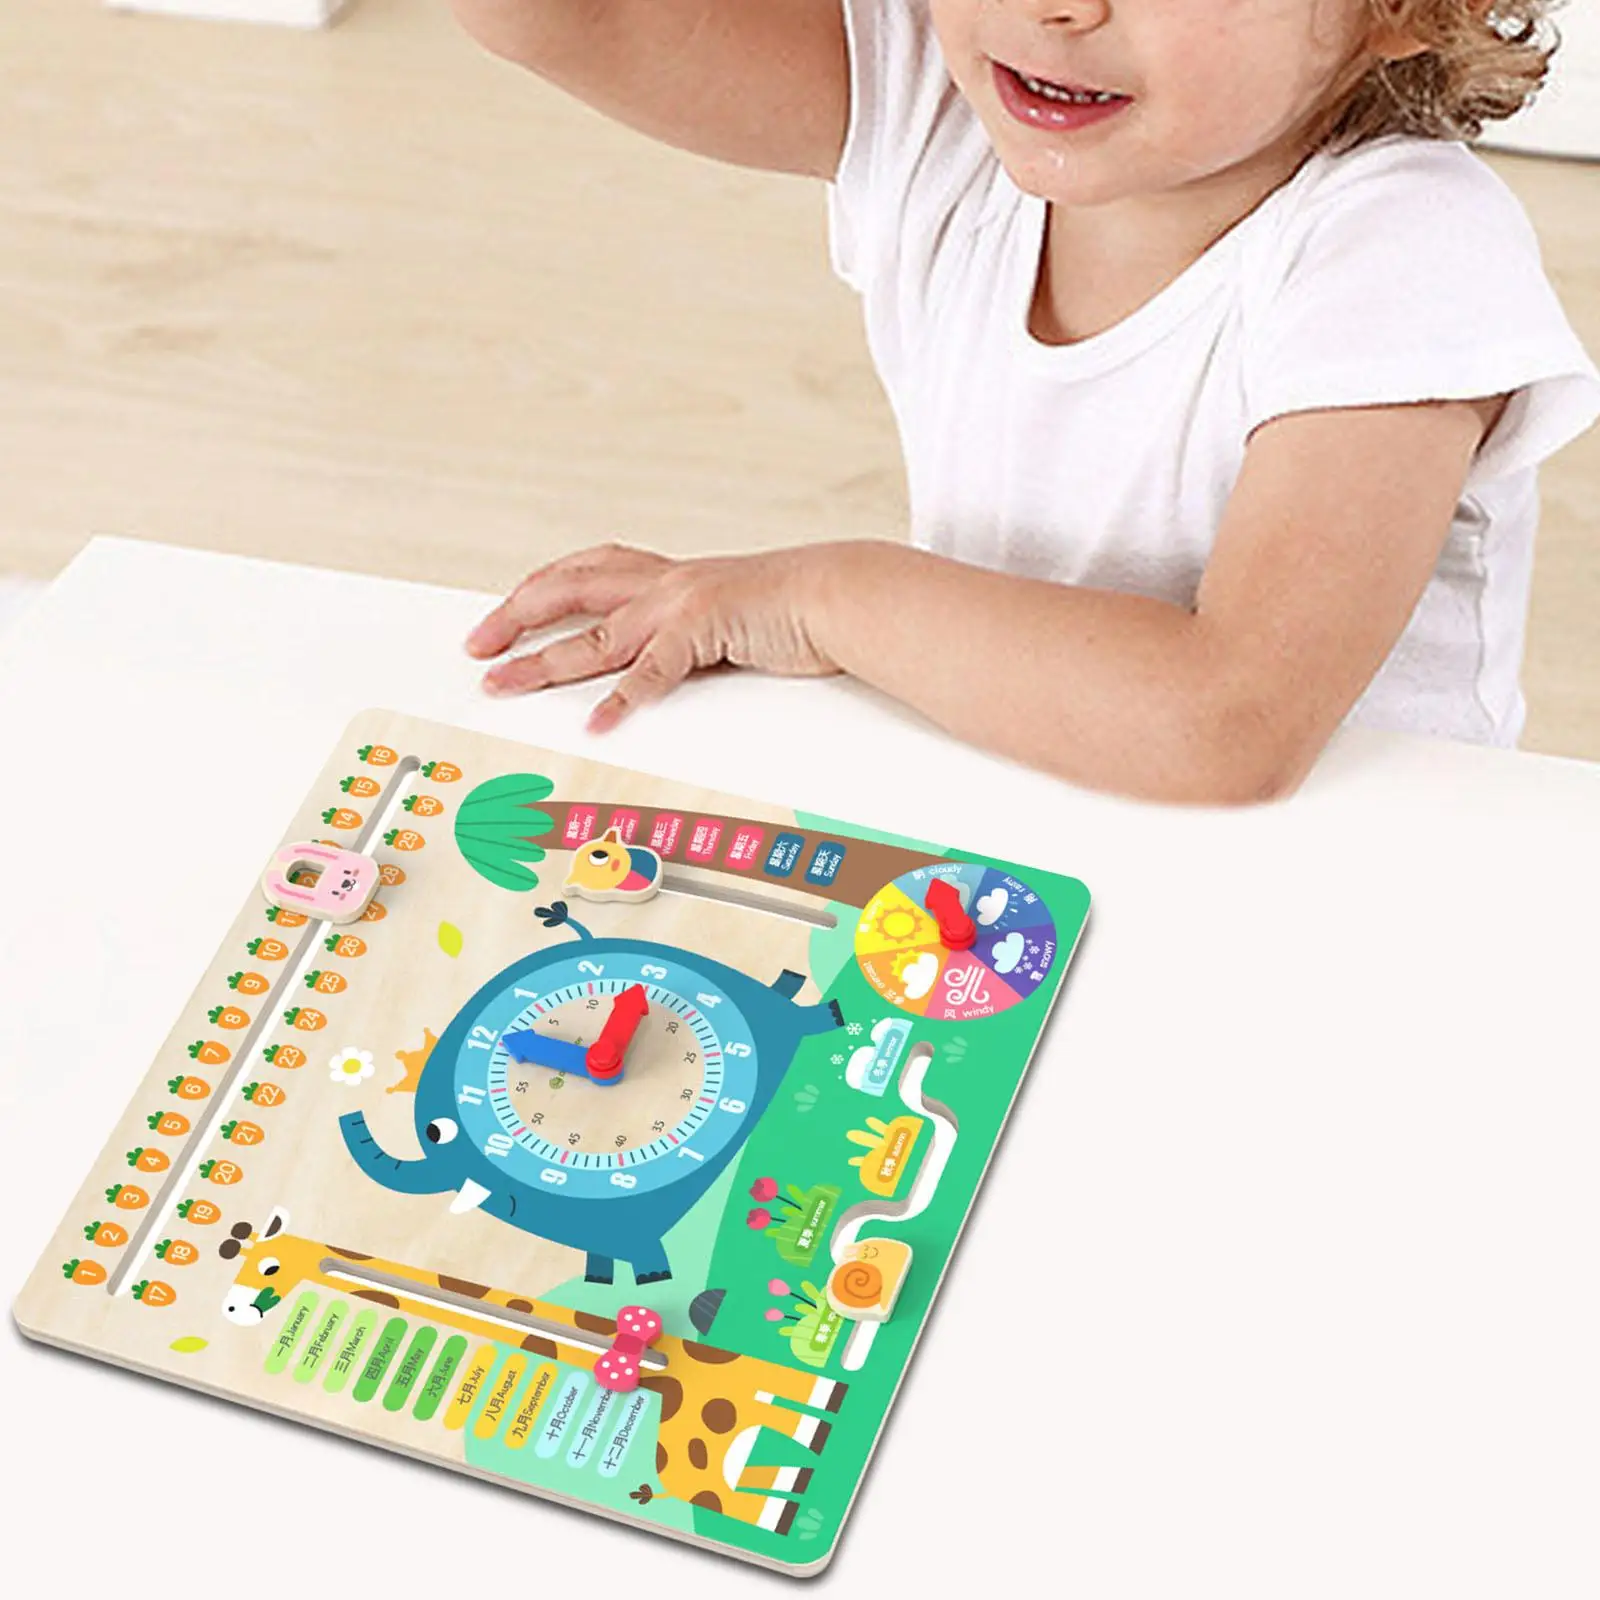 

Деревянные часы с календарем, Забавные часы с календарем, обучающая игрушка для детей дошкольного возраста